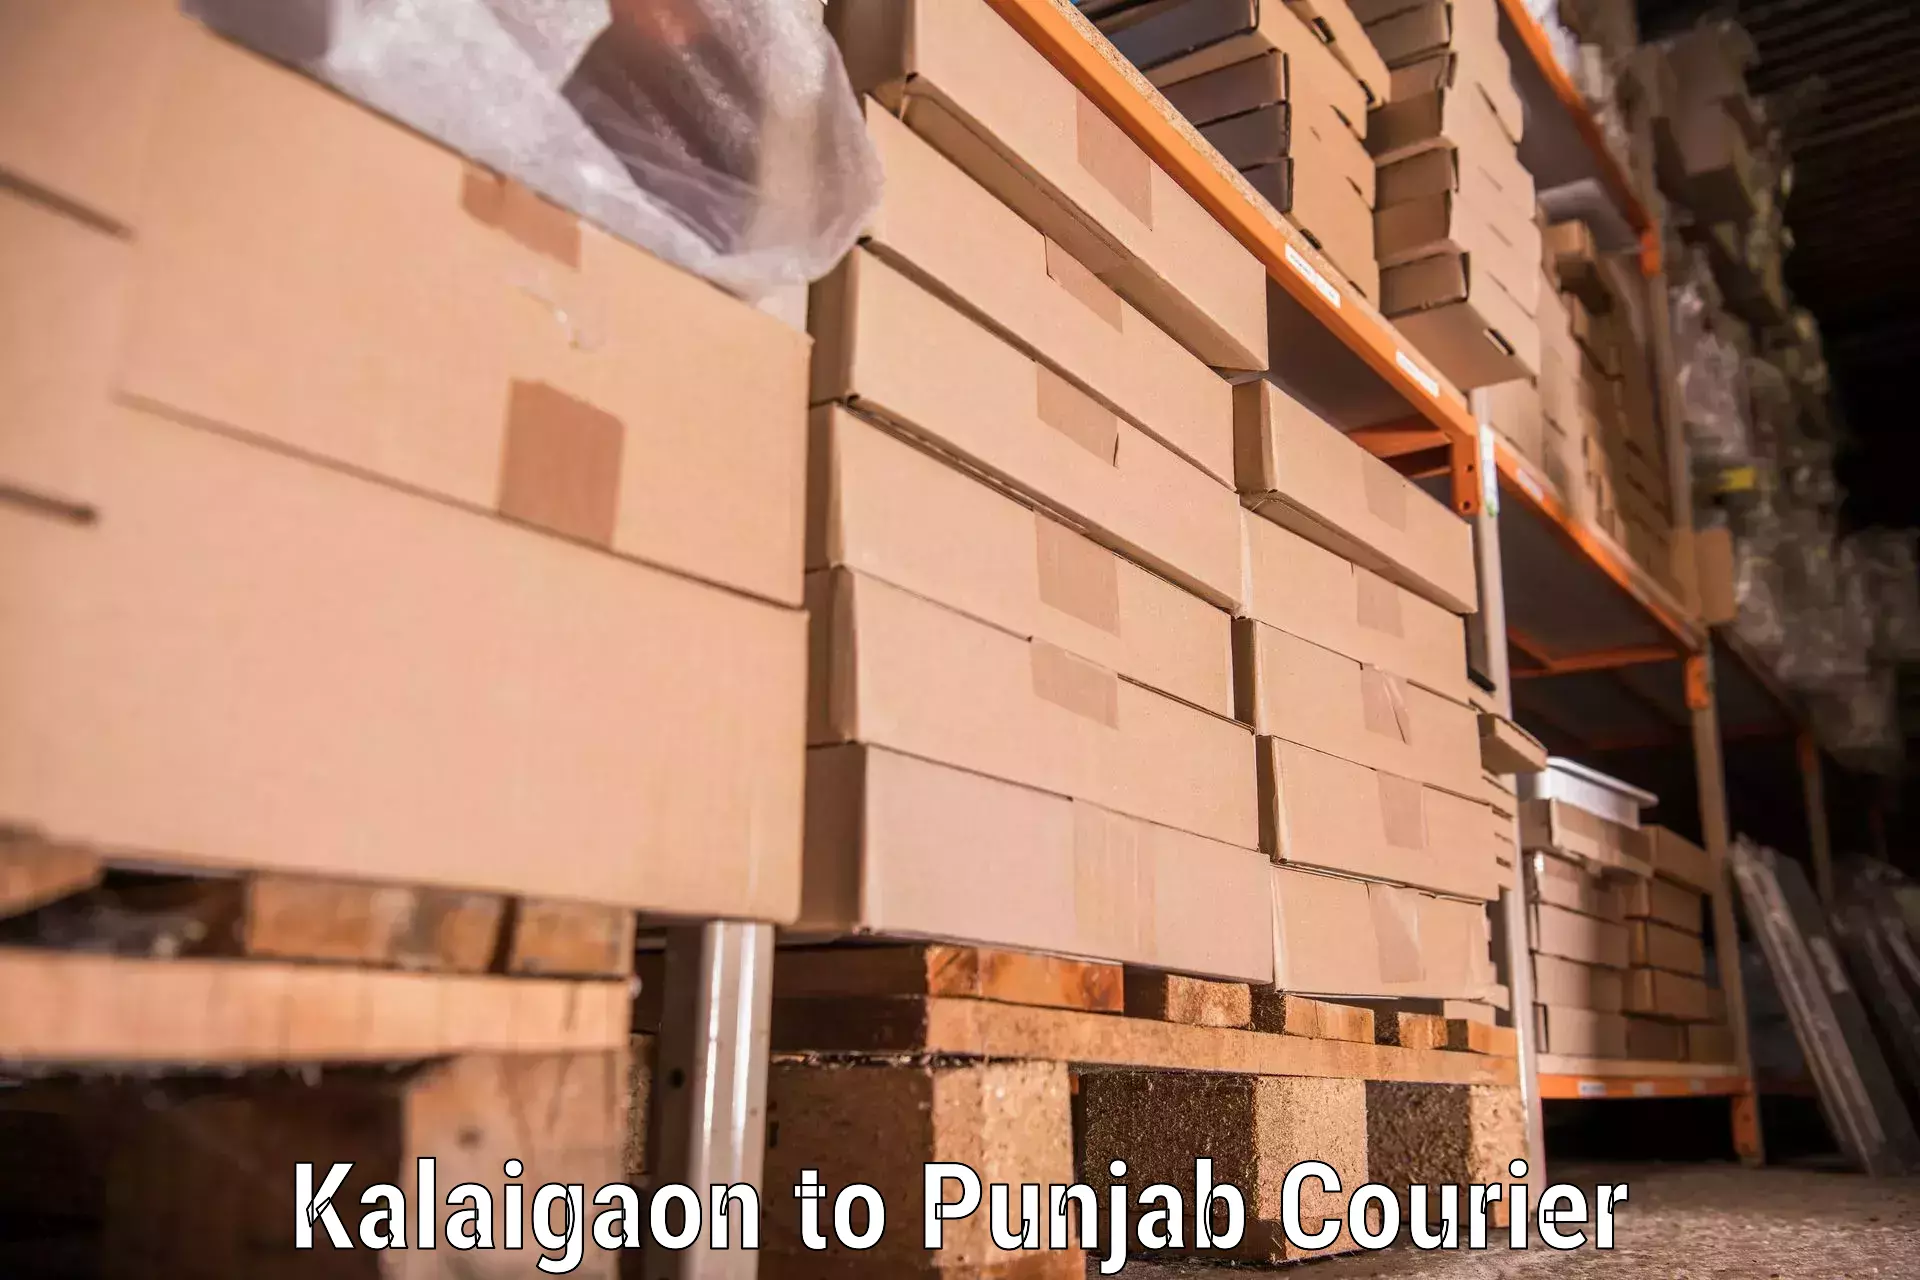 Budget-friendly moving services Kalaigaon to Bathinda